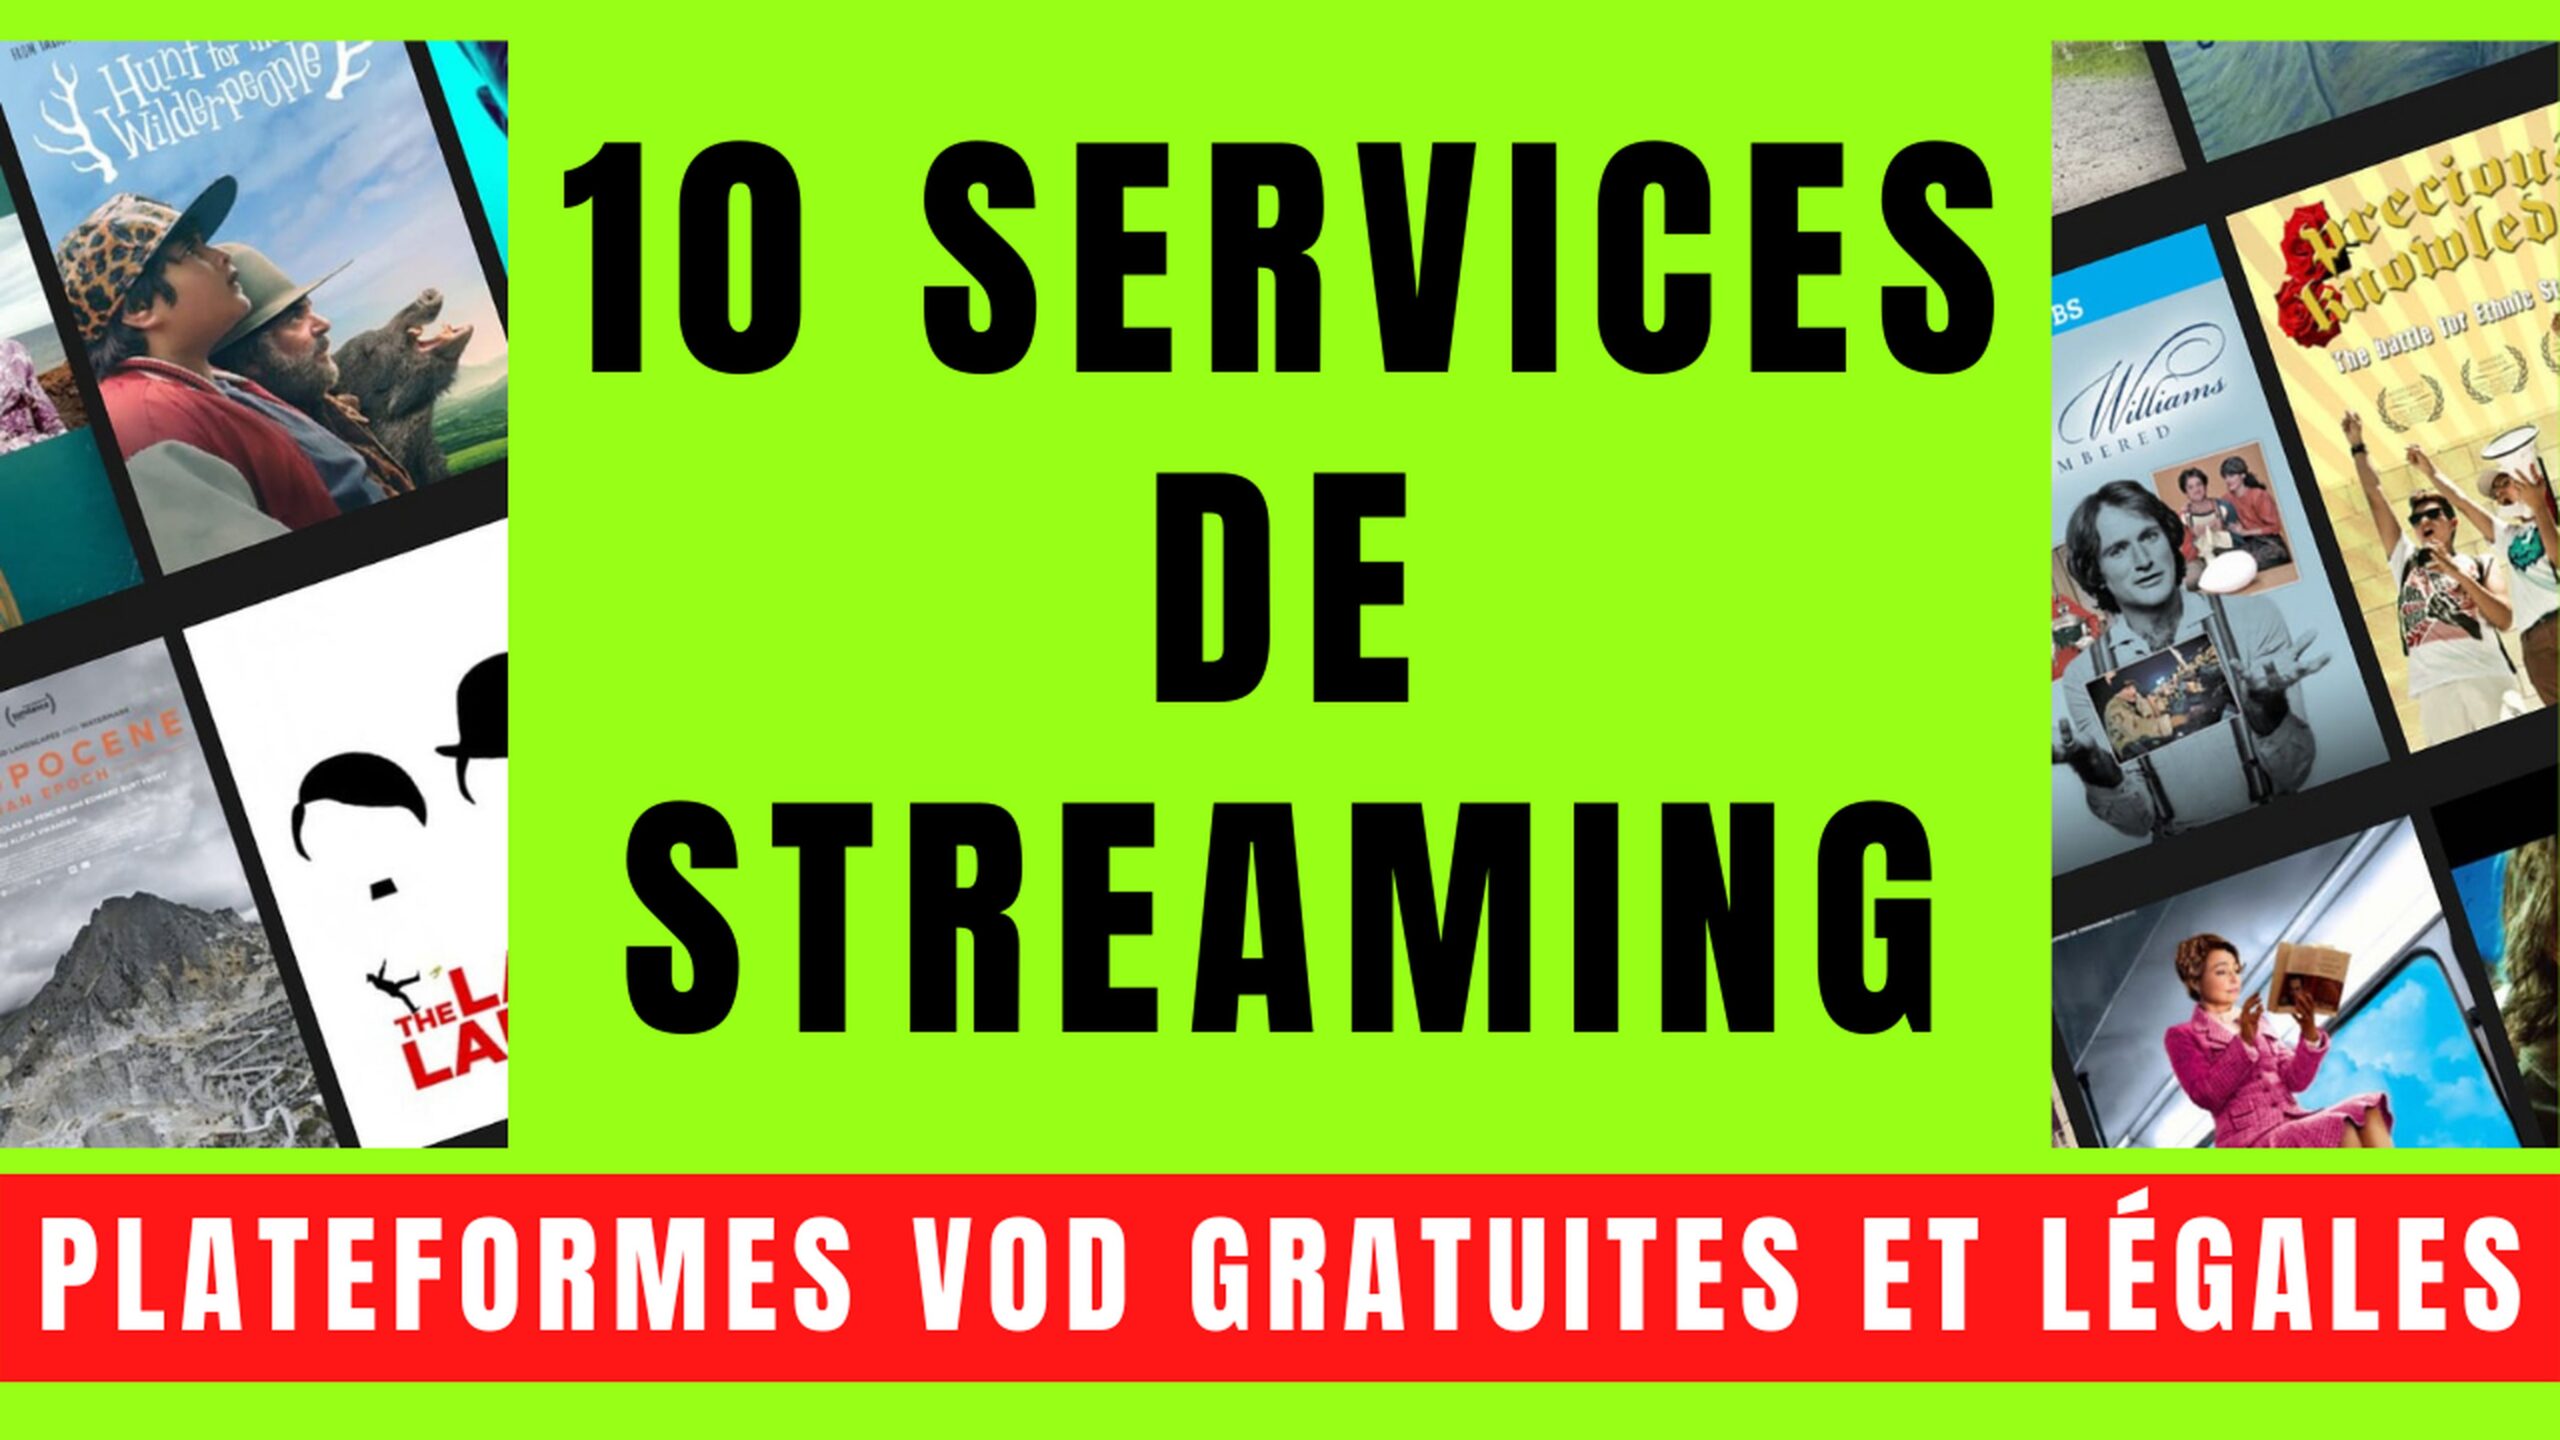 10 SERVICES VOD avec STREAMING GRATUIT et LÉGAL 4